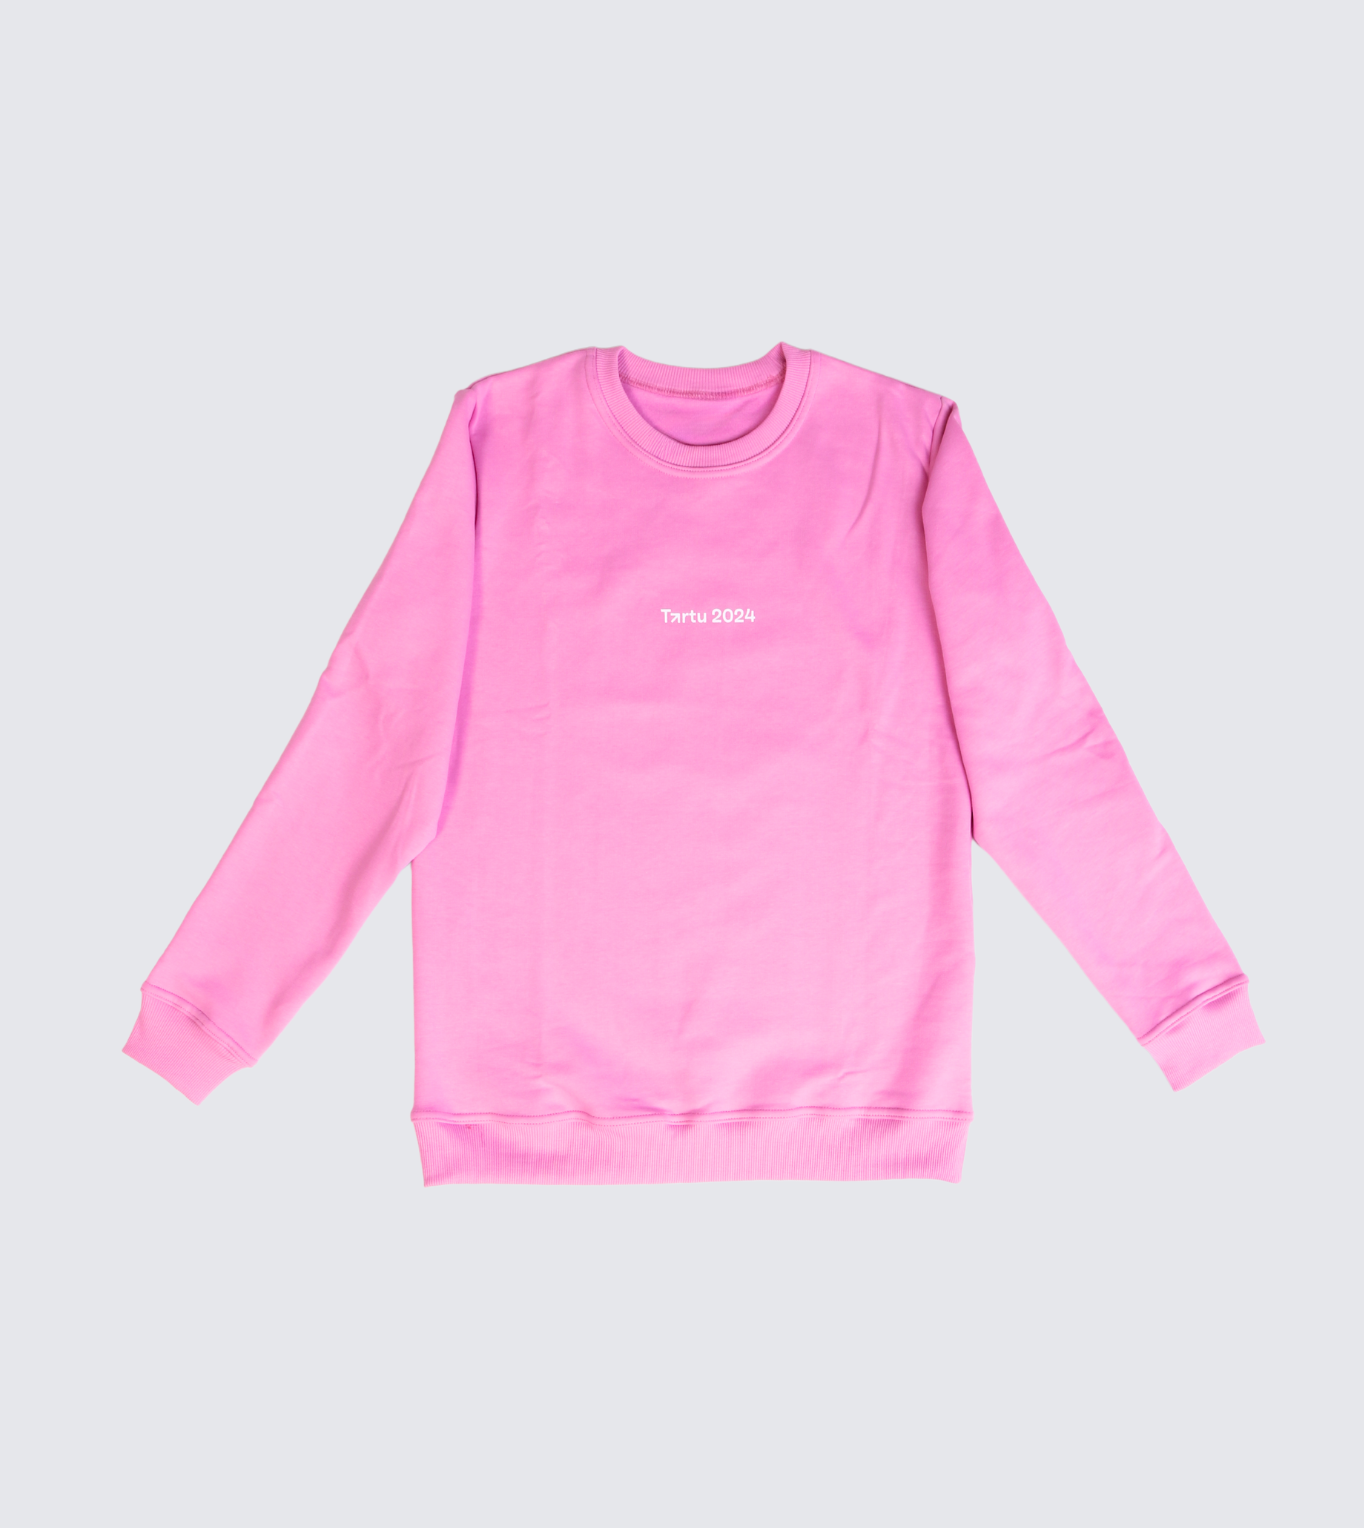 Tartu 2024 pink sweatshirt for kids